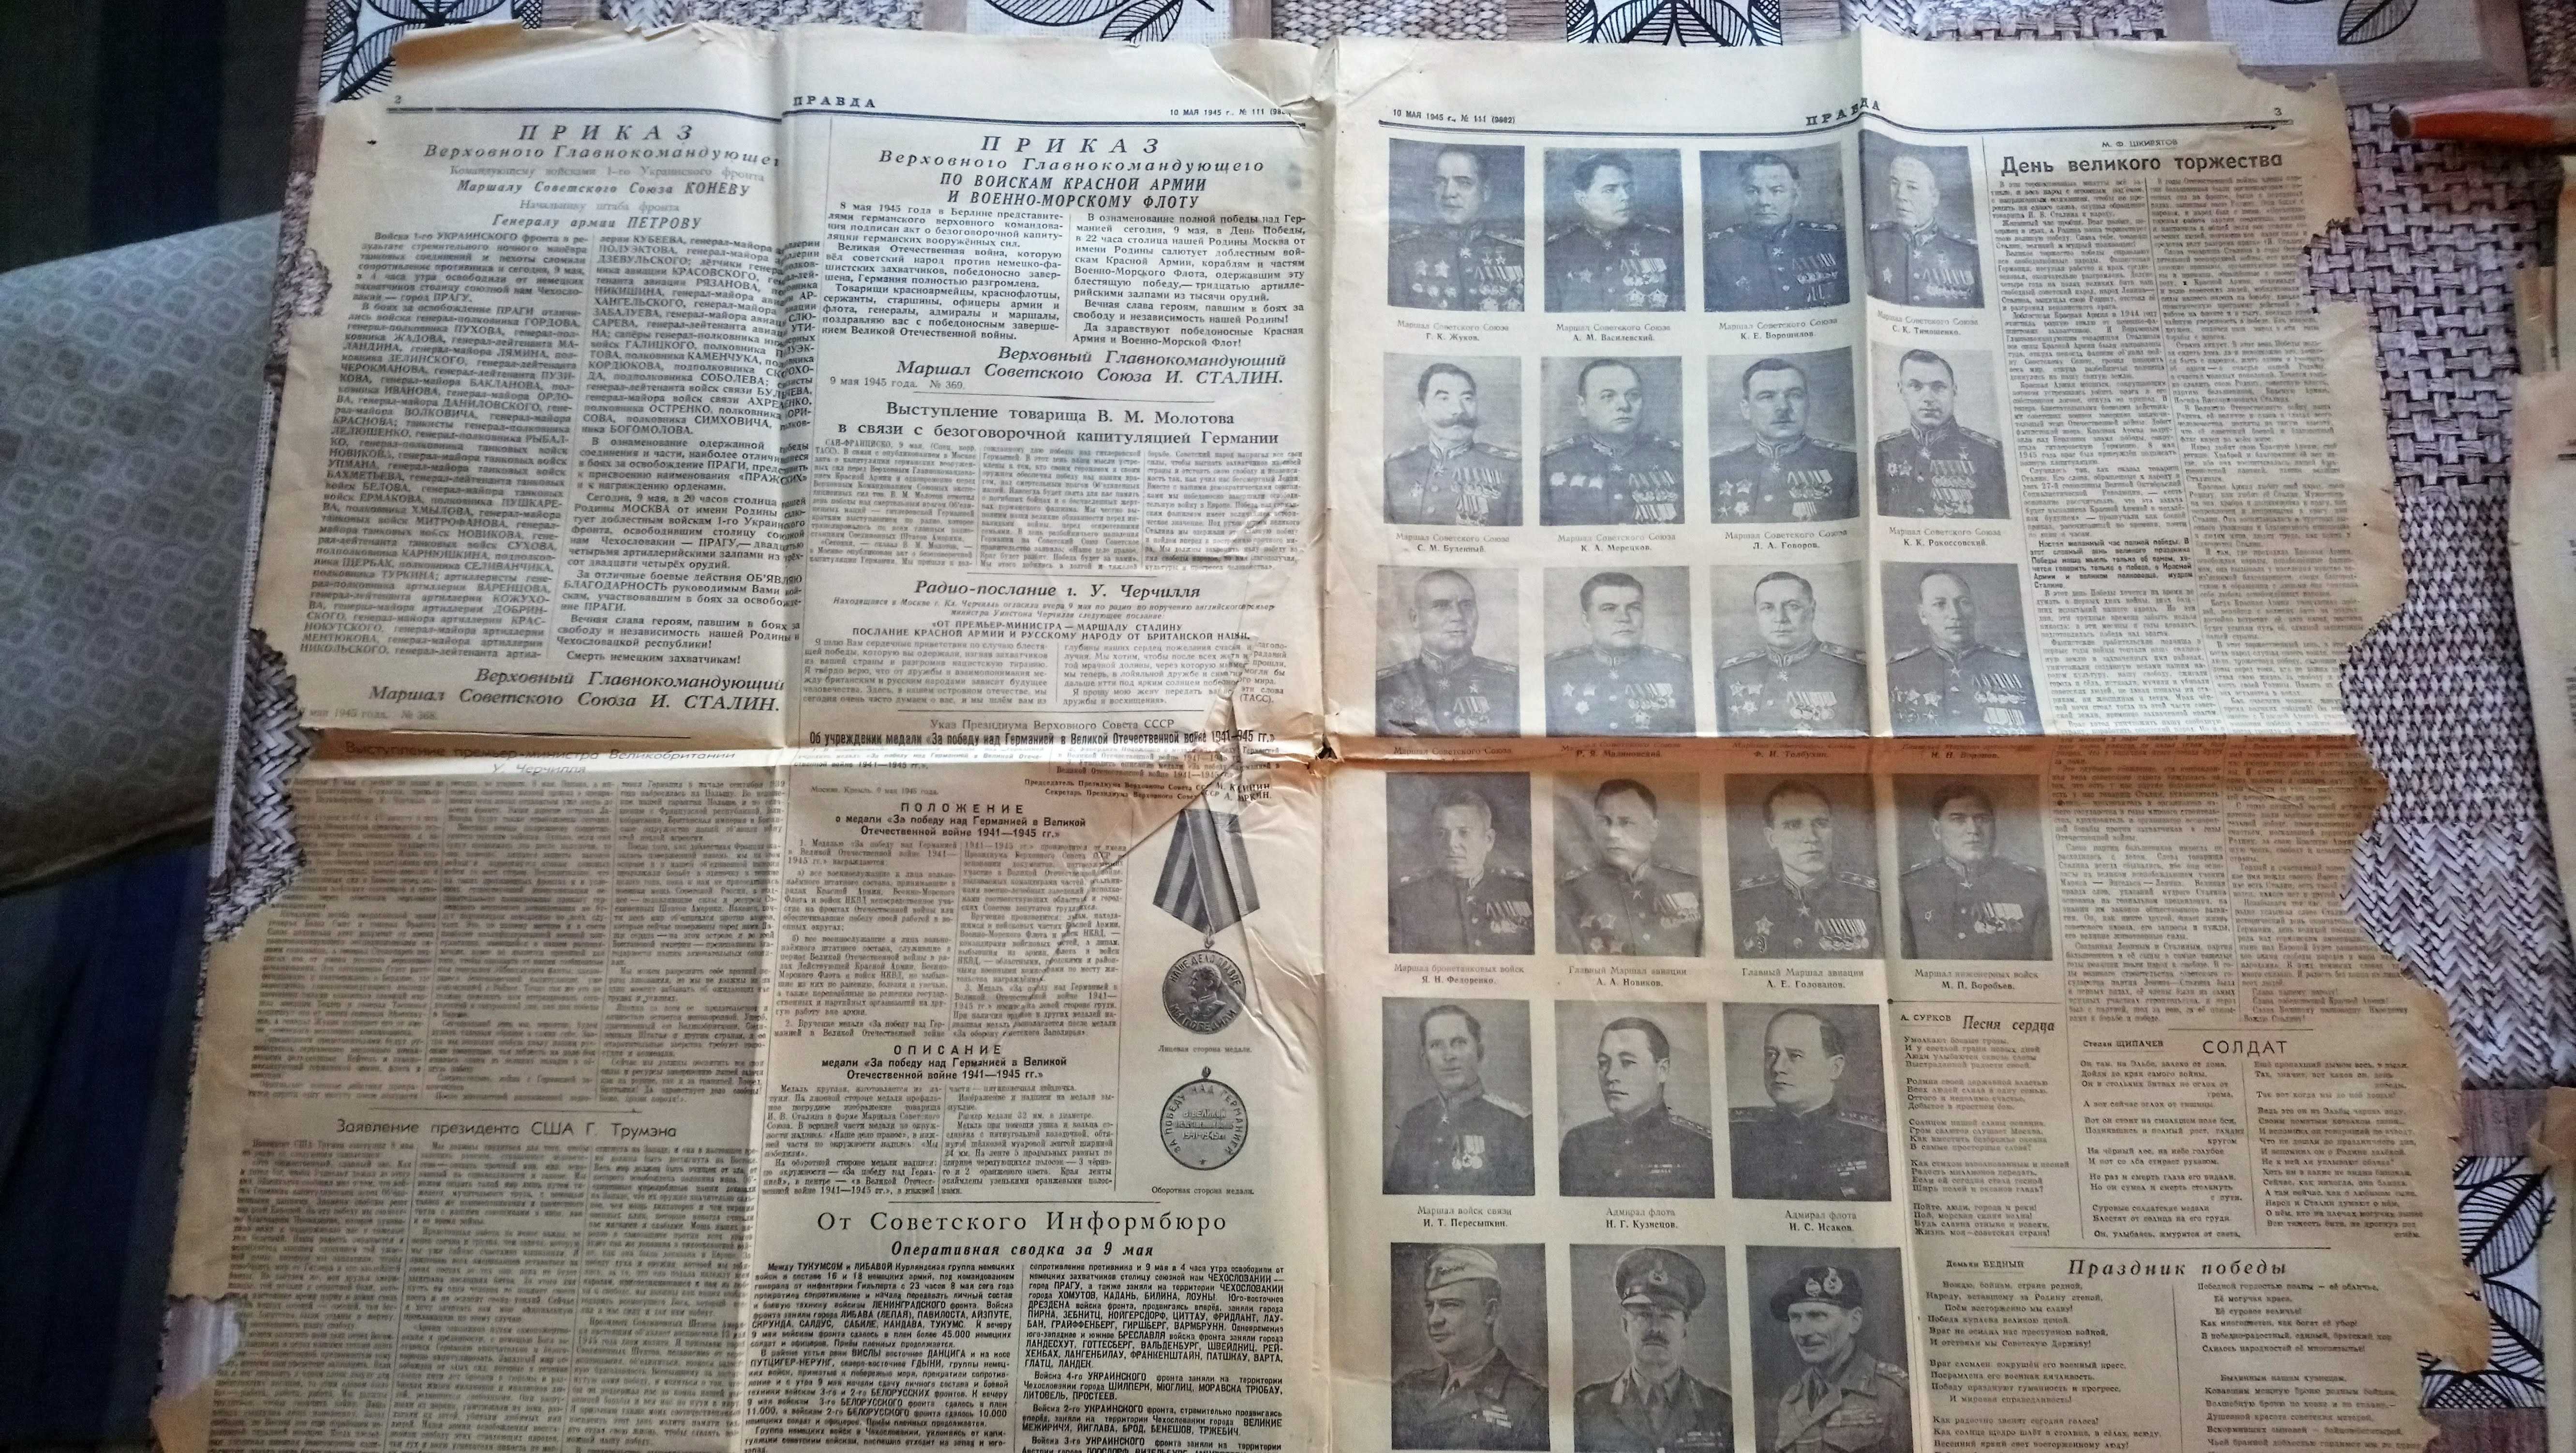 Газеты  Красная чувашия от 23 февраля 44 года и Правда  1945 года